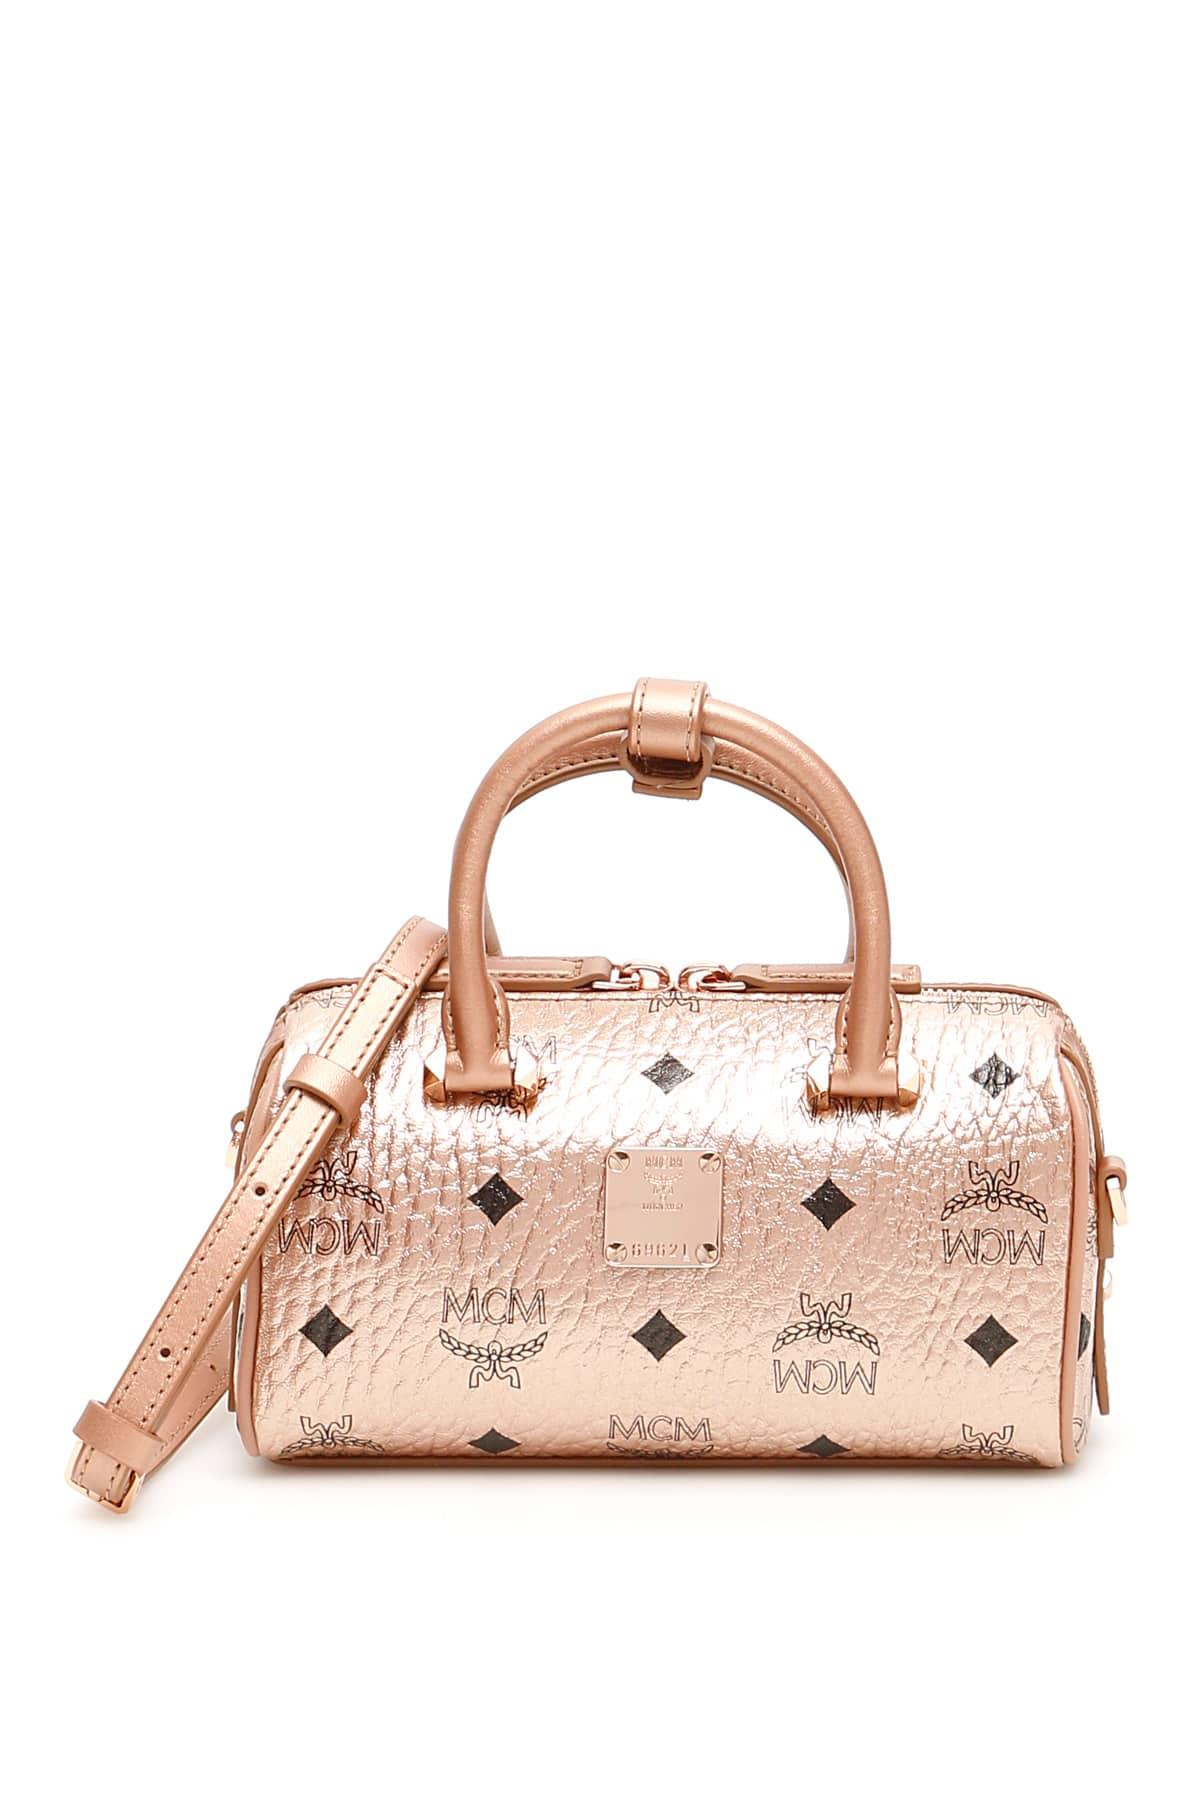 MCM Visetos Essential Boston Mini Bag in Pink,Metallic (Pink) - Save 11% - Lyst